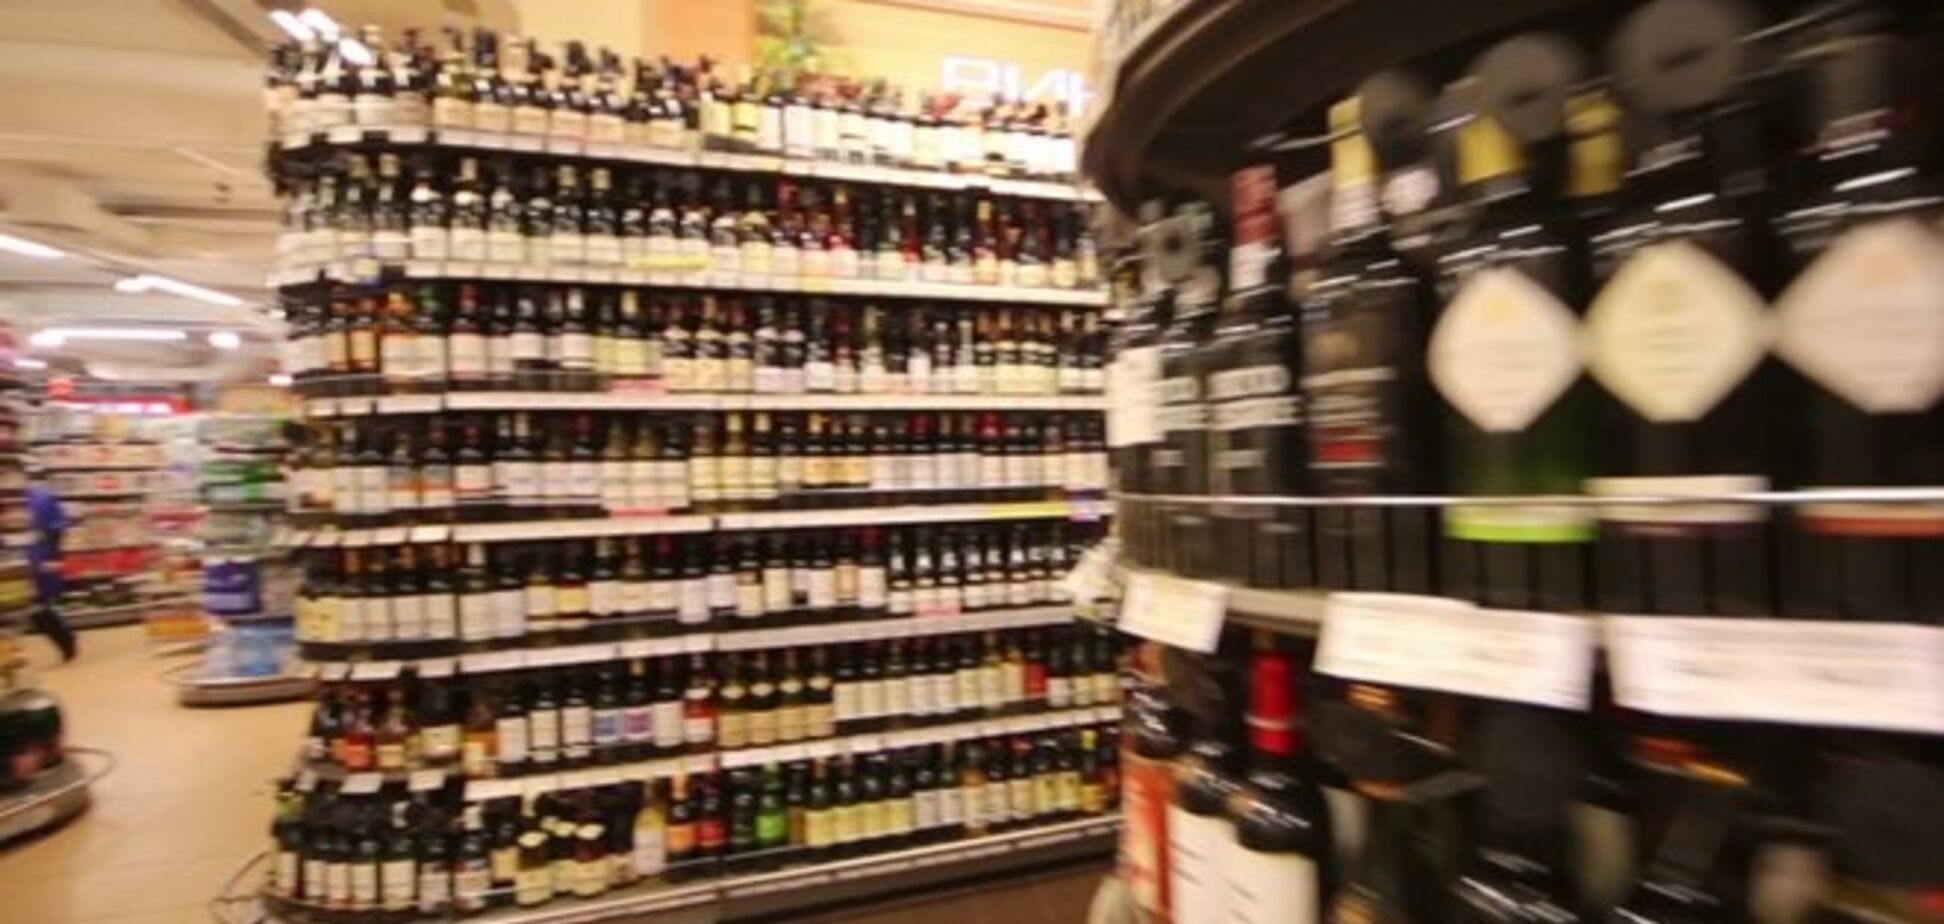 В России хотят запретить продажу алкоголя в выходные дни